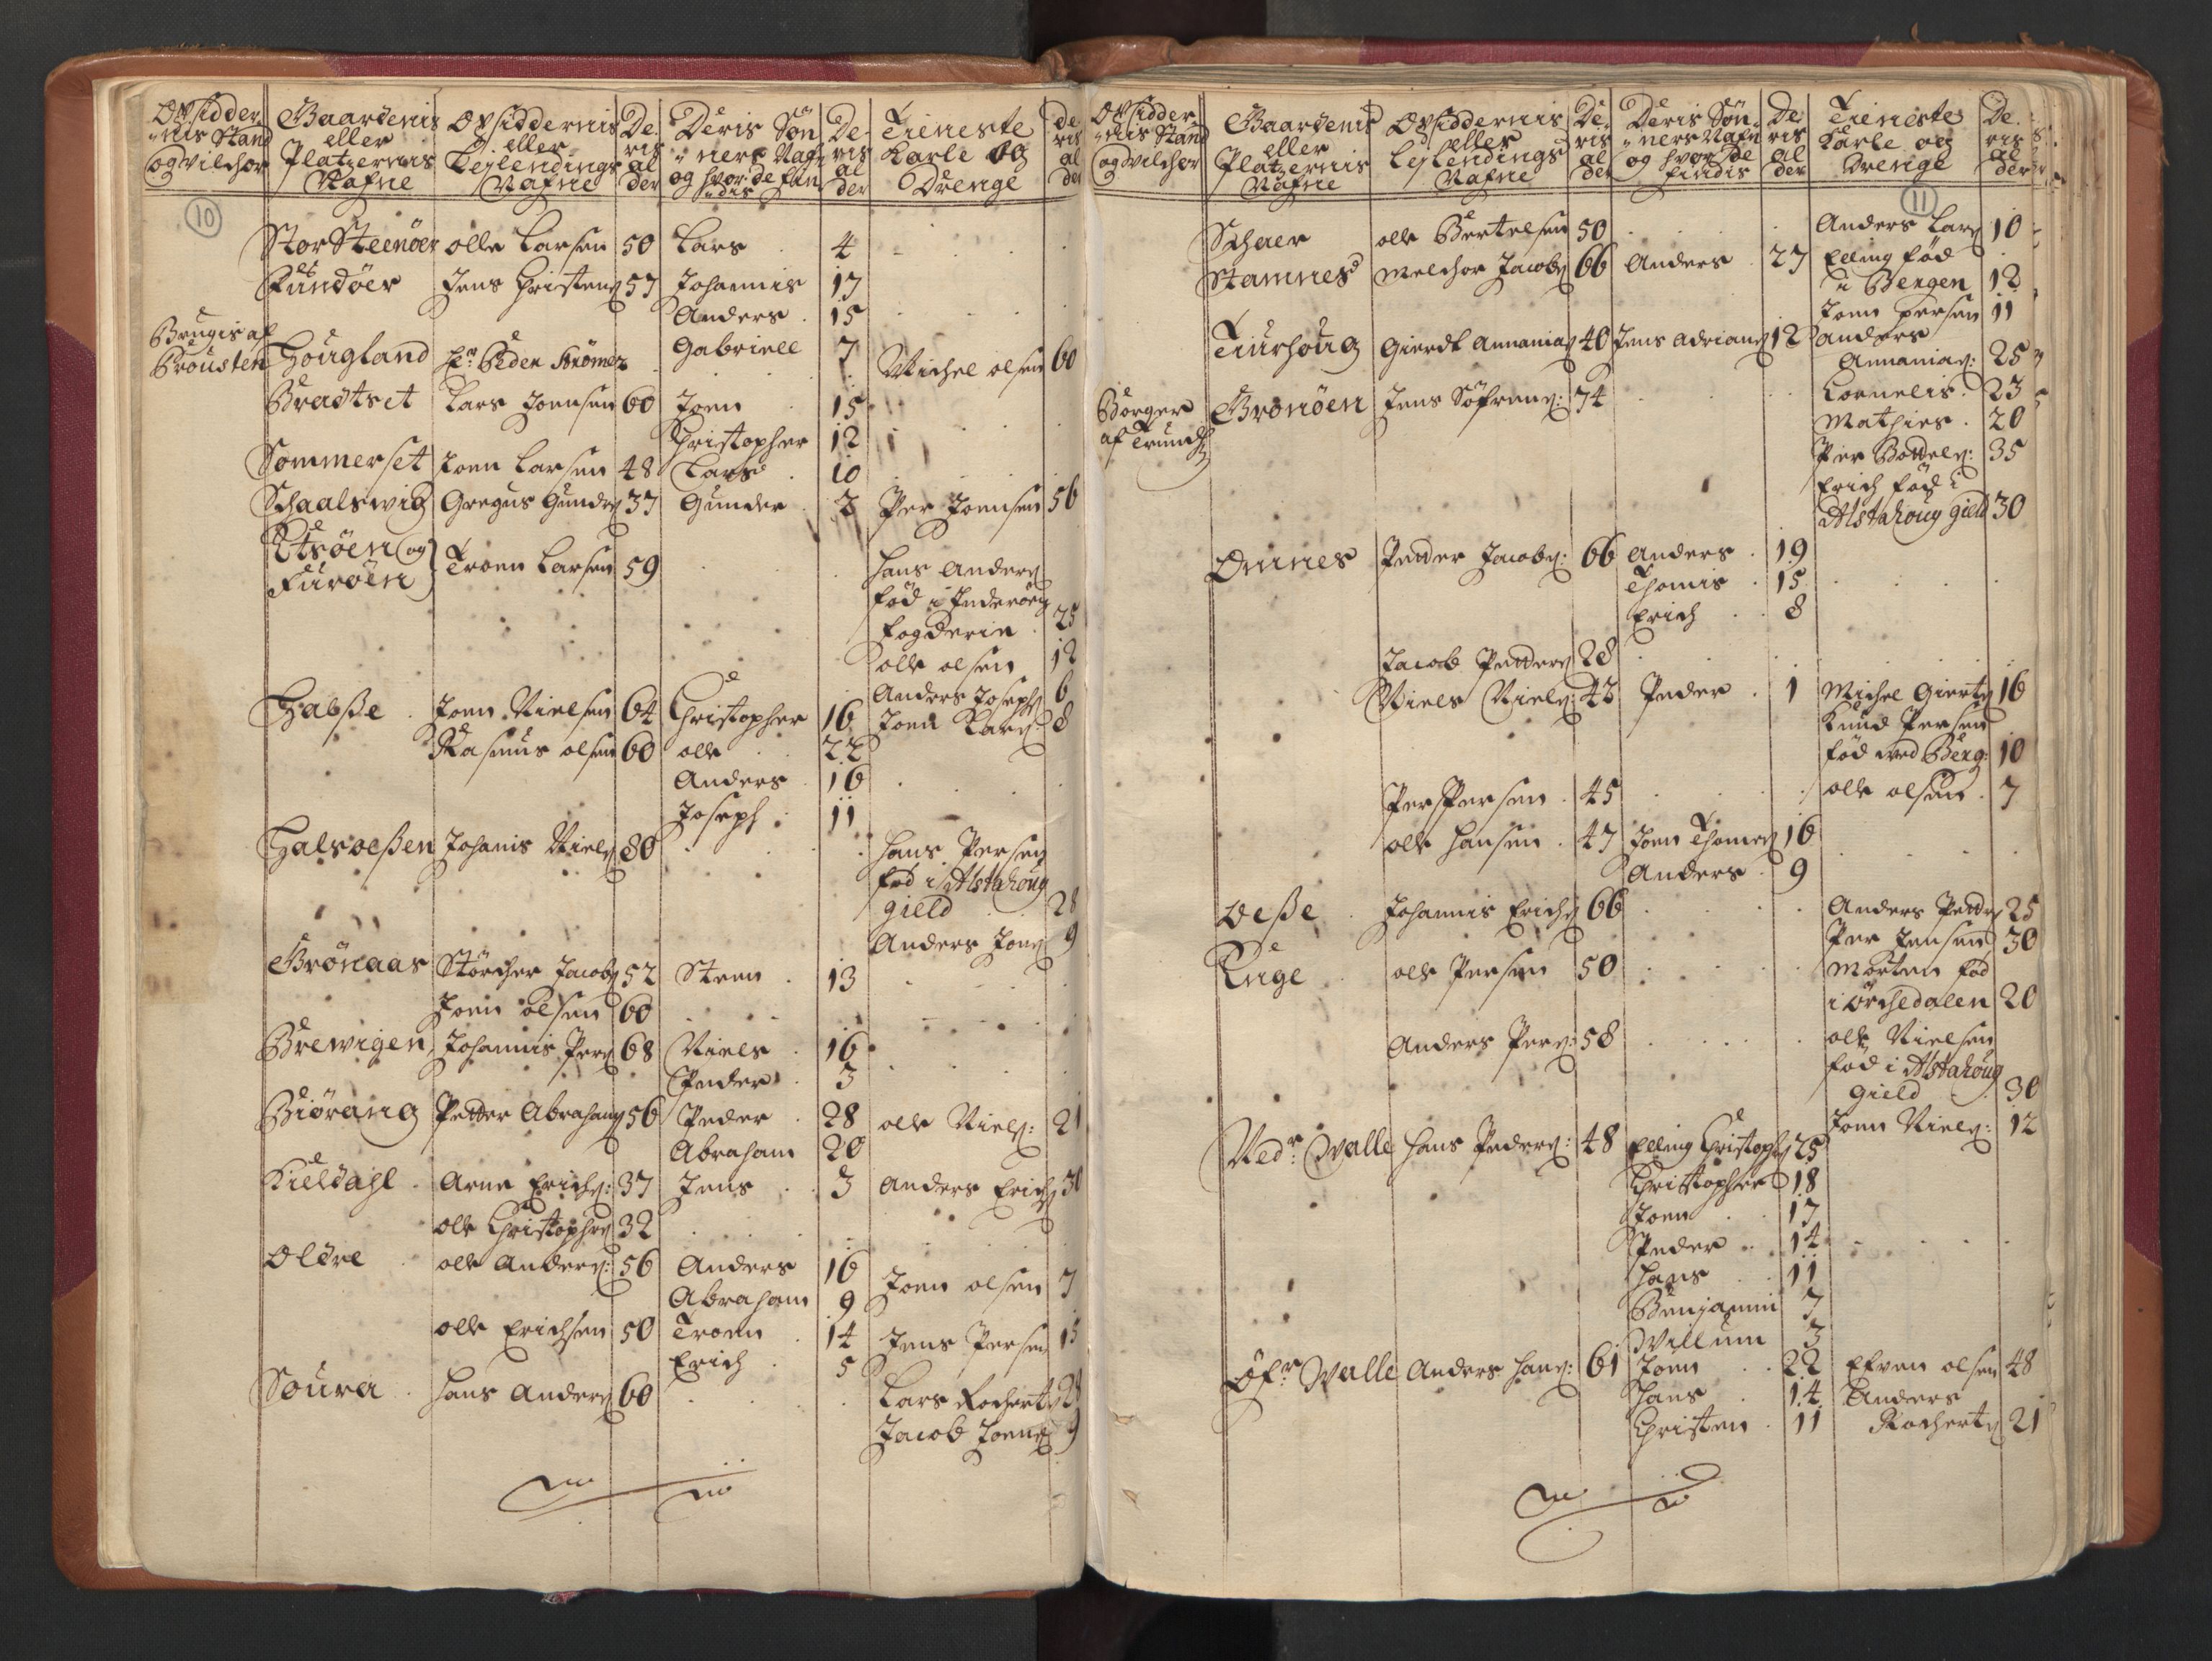 RA, Manntallet 1701, nr. 16: Helgeland fogderi, 1701, s. 10-11